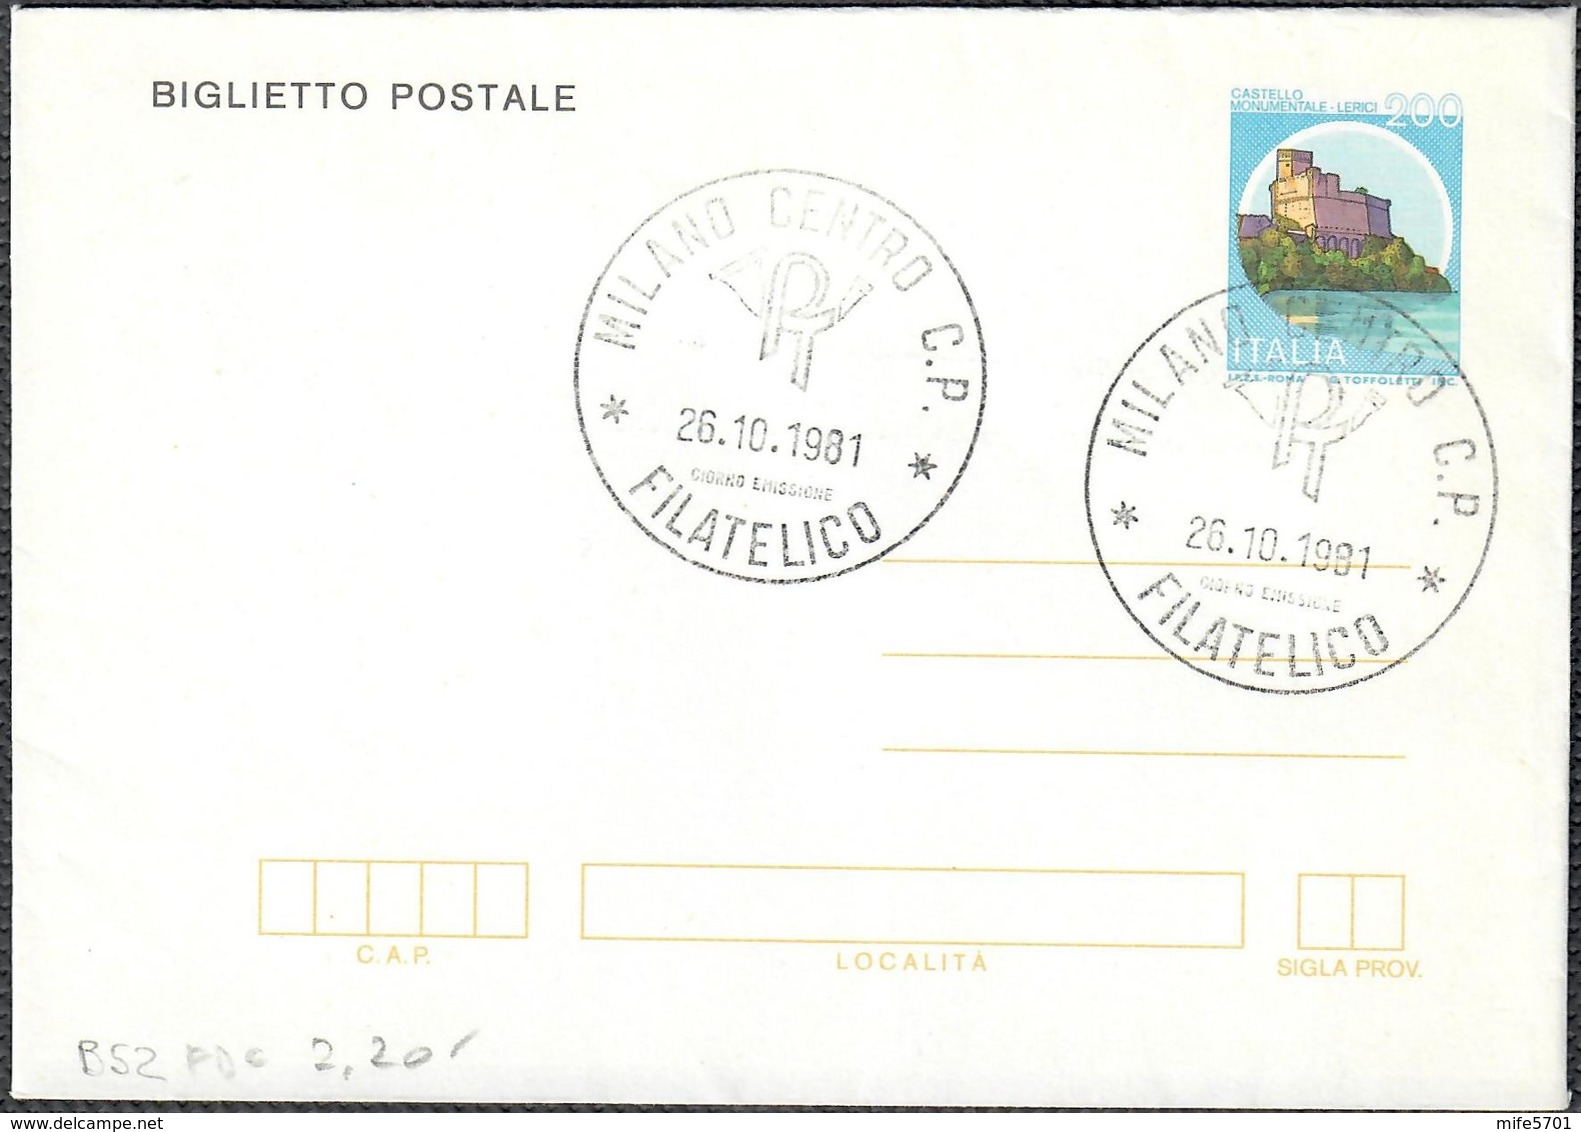 BIGLIETTO POSTALE SERIE CASTELLI D'ITALIA LERICI L. 200 - 1981 - CATALOGO FILAGRANO "B52" - FDC - Stamped Stationery